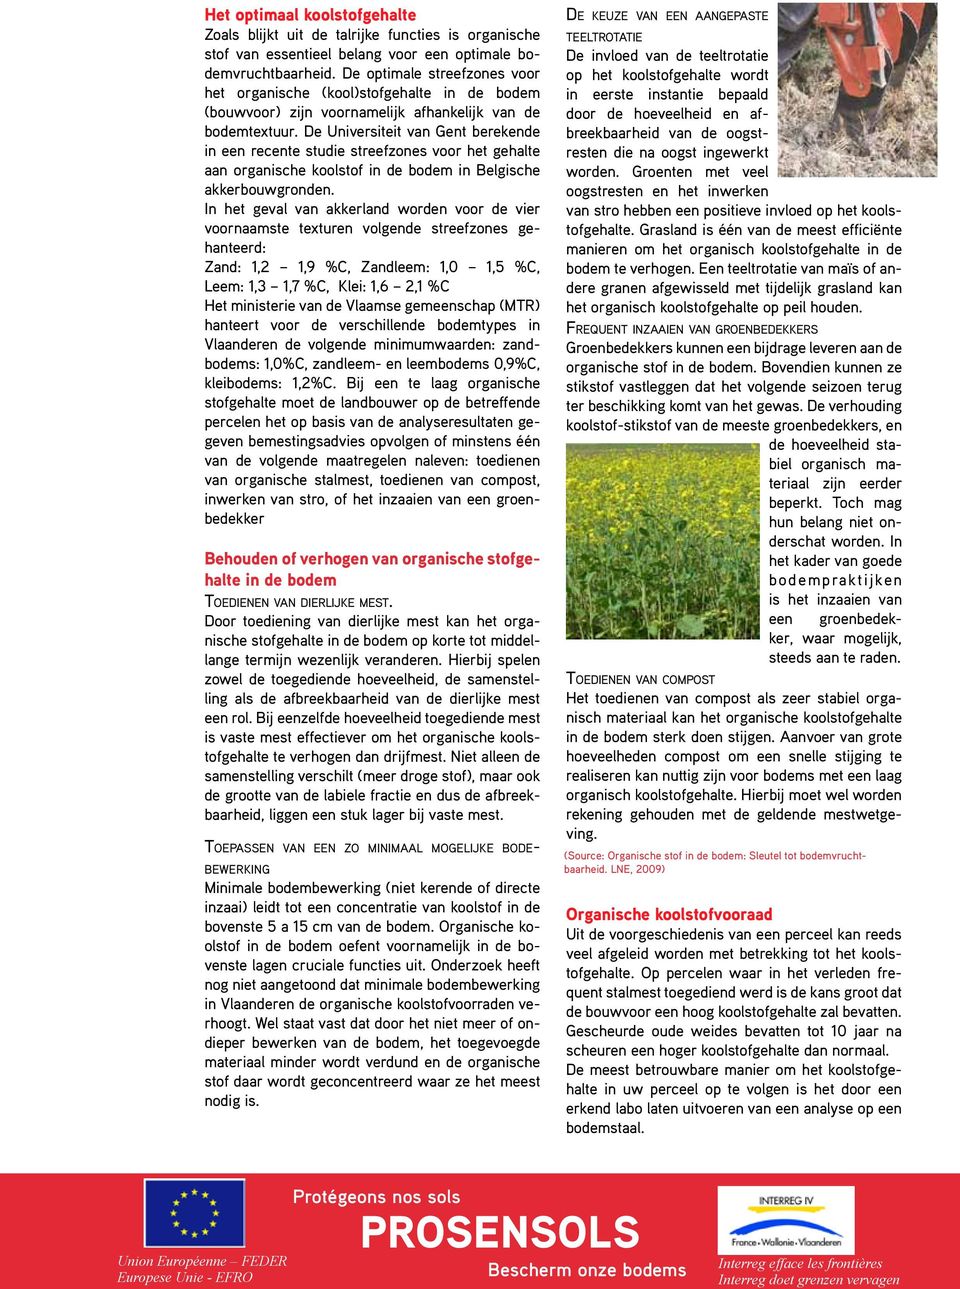 De Universiteit van Gent berekende in een recente studie streefzones voor het gehalte aan organische koolstof in de bodem in Belgische akkerbouwgronden.